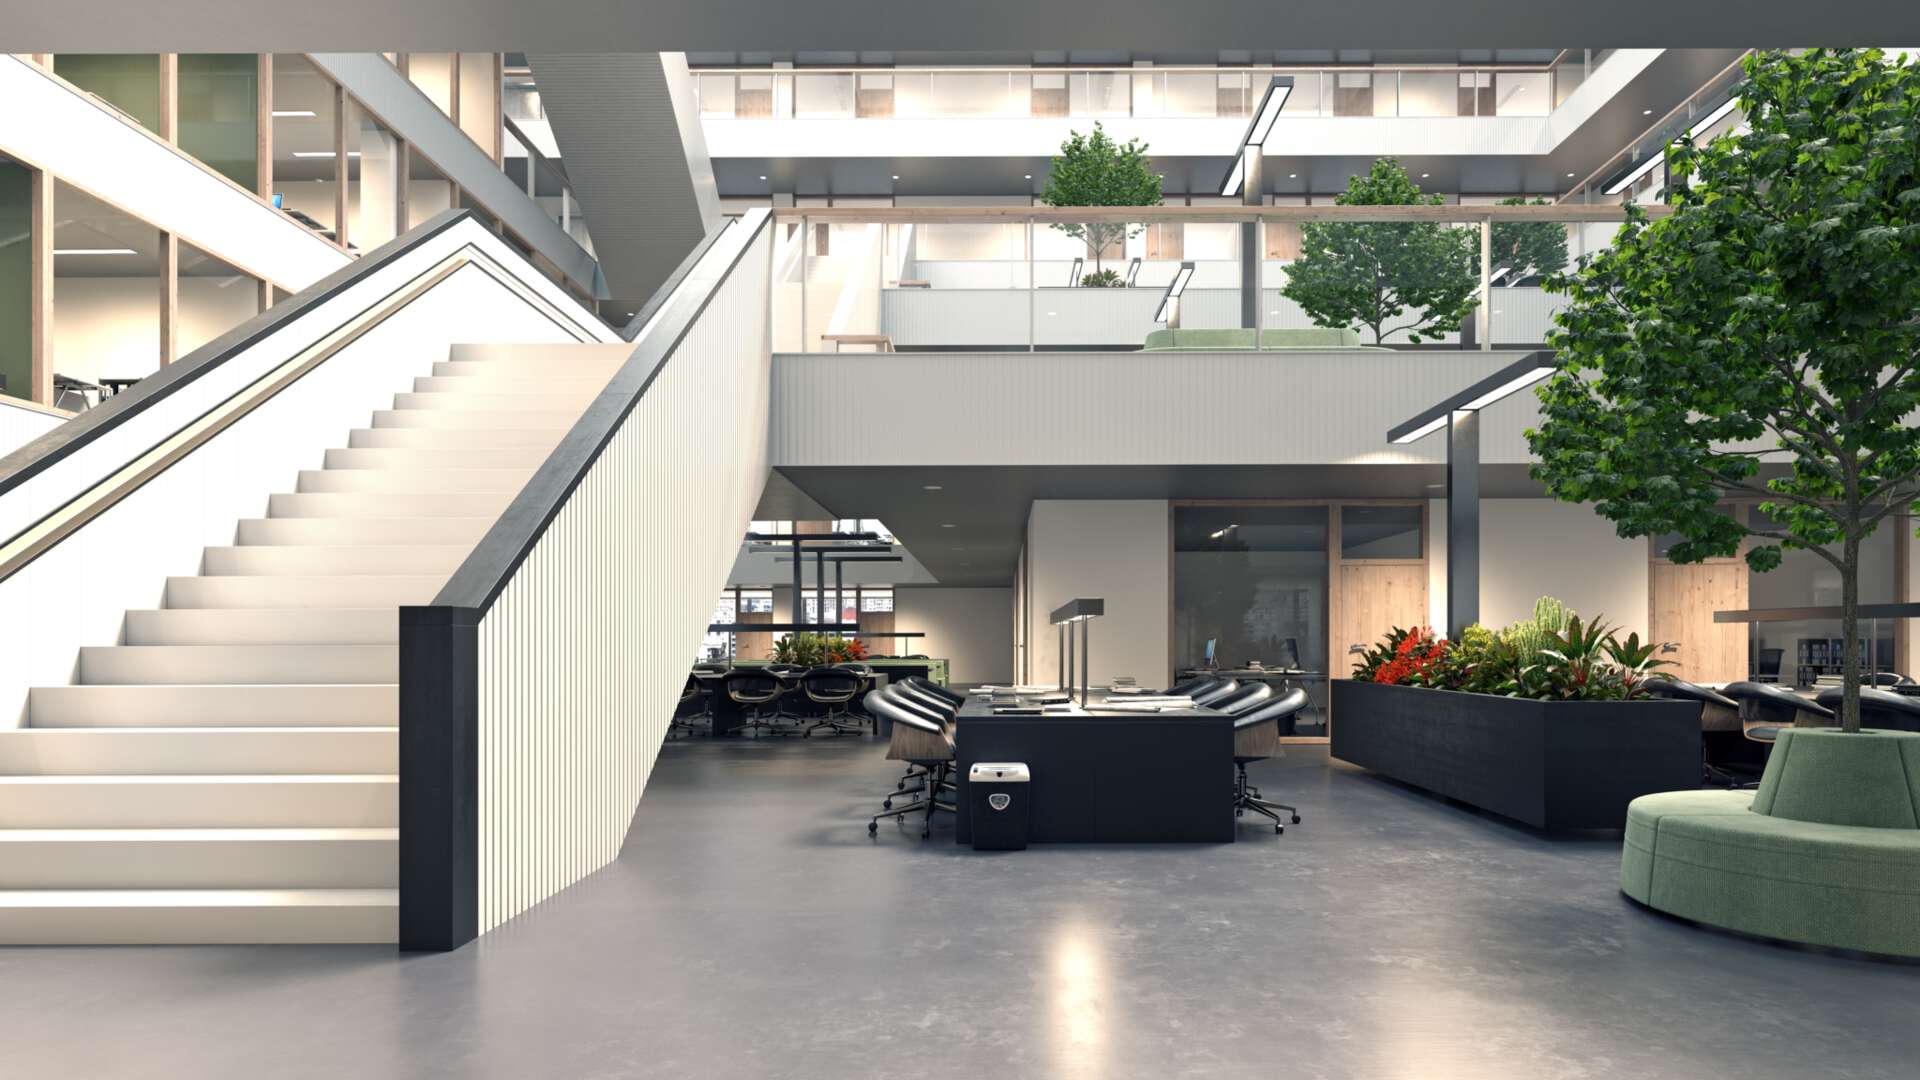 Treppen, Arbeits- und Loungeflächen in einem modernen Bürogebäude.